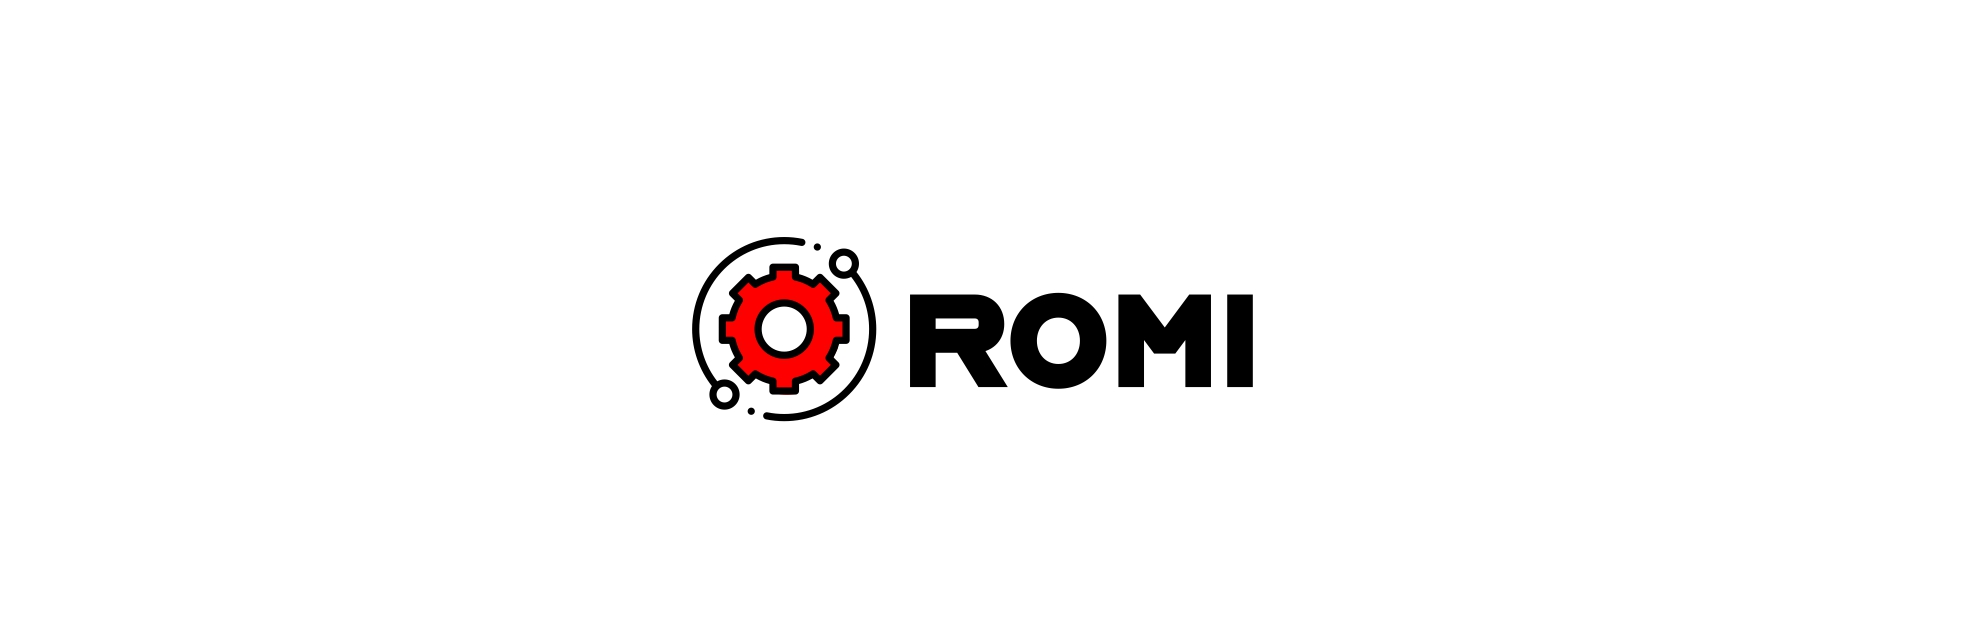 ROMI – Tarcze wysiewające | ROMI – wyroby ze stali